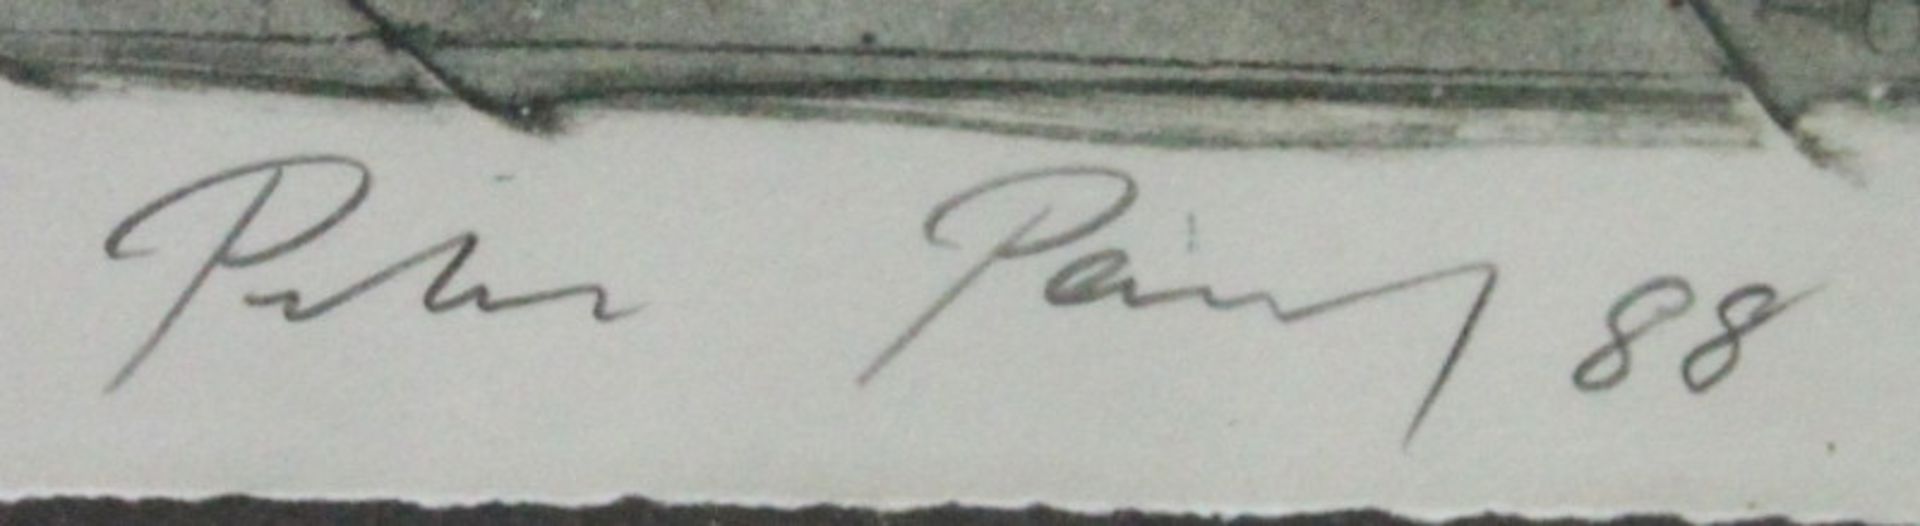 Peter Paul (1943-2013) - Farblithographie auf Papier, "Architektur", (19)88signiert, datiert und - Bild 2 aus 2